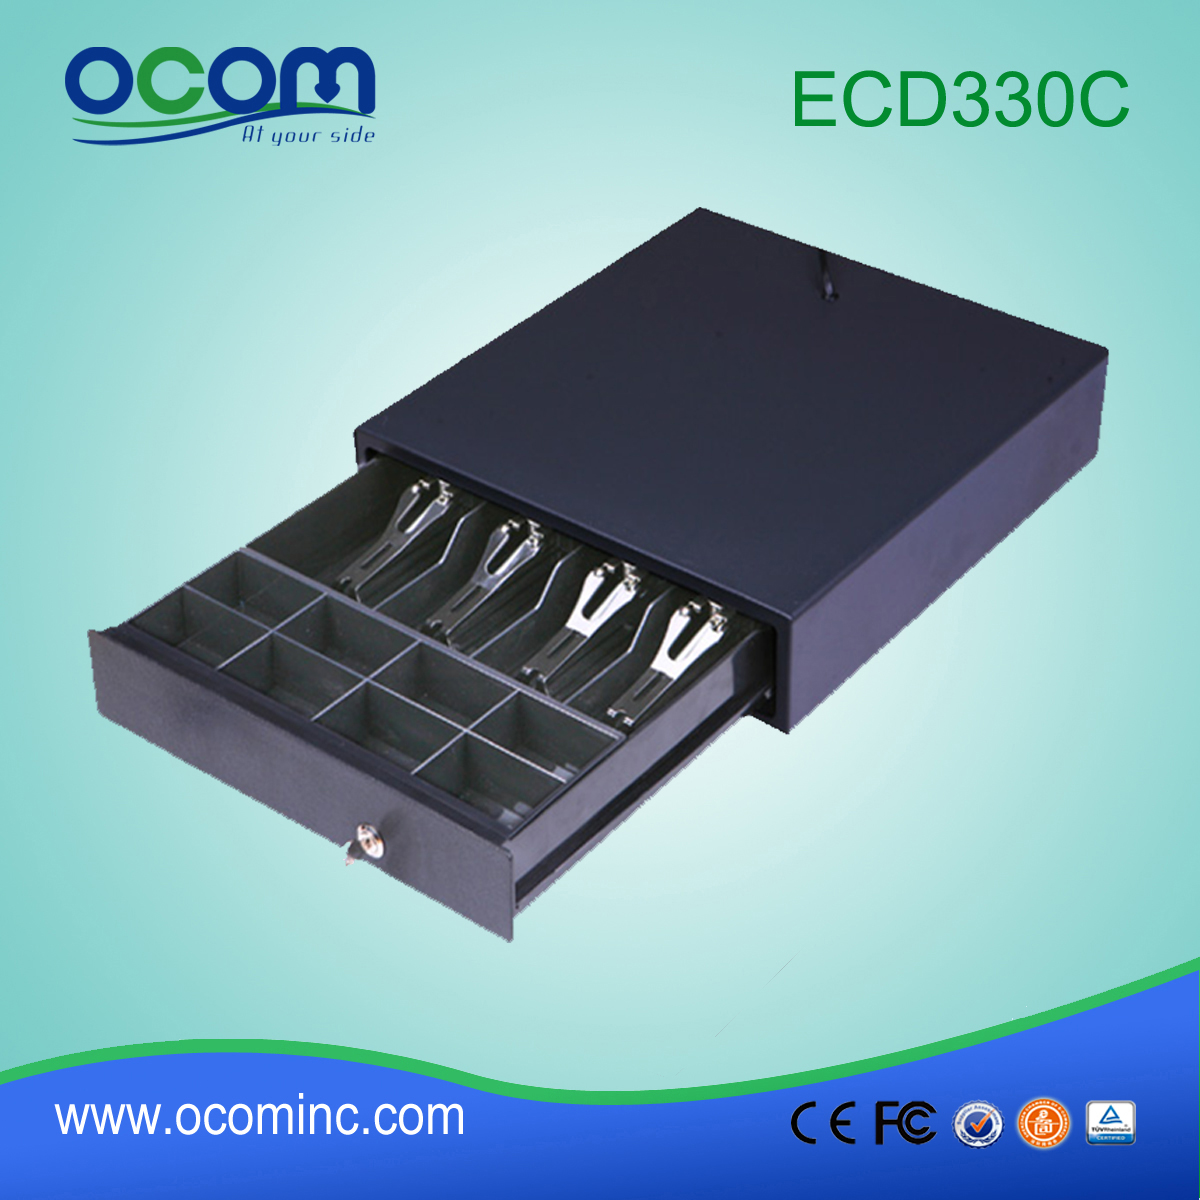 (ECD330C) Nuevo cajón de efectivo de color negro pos